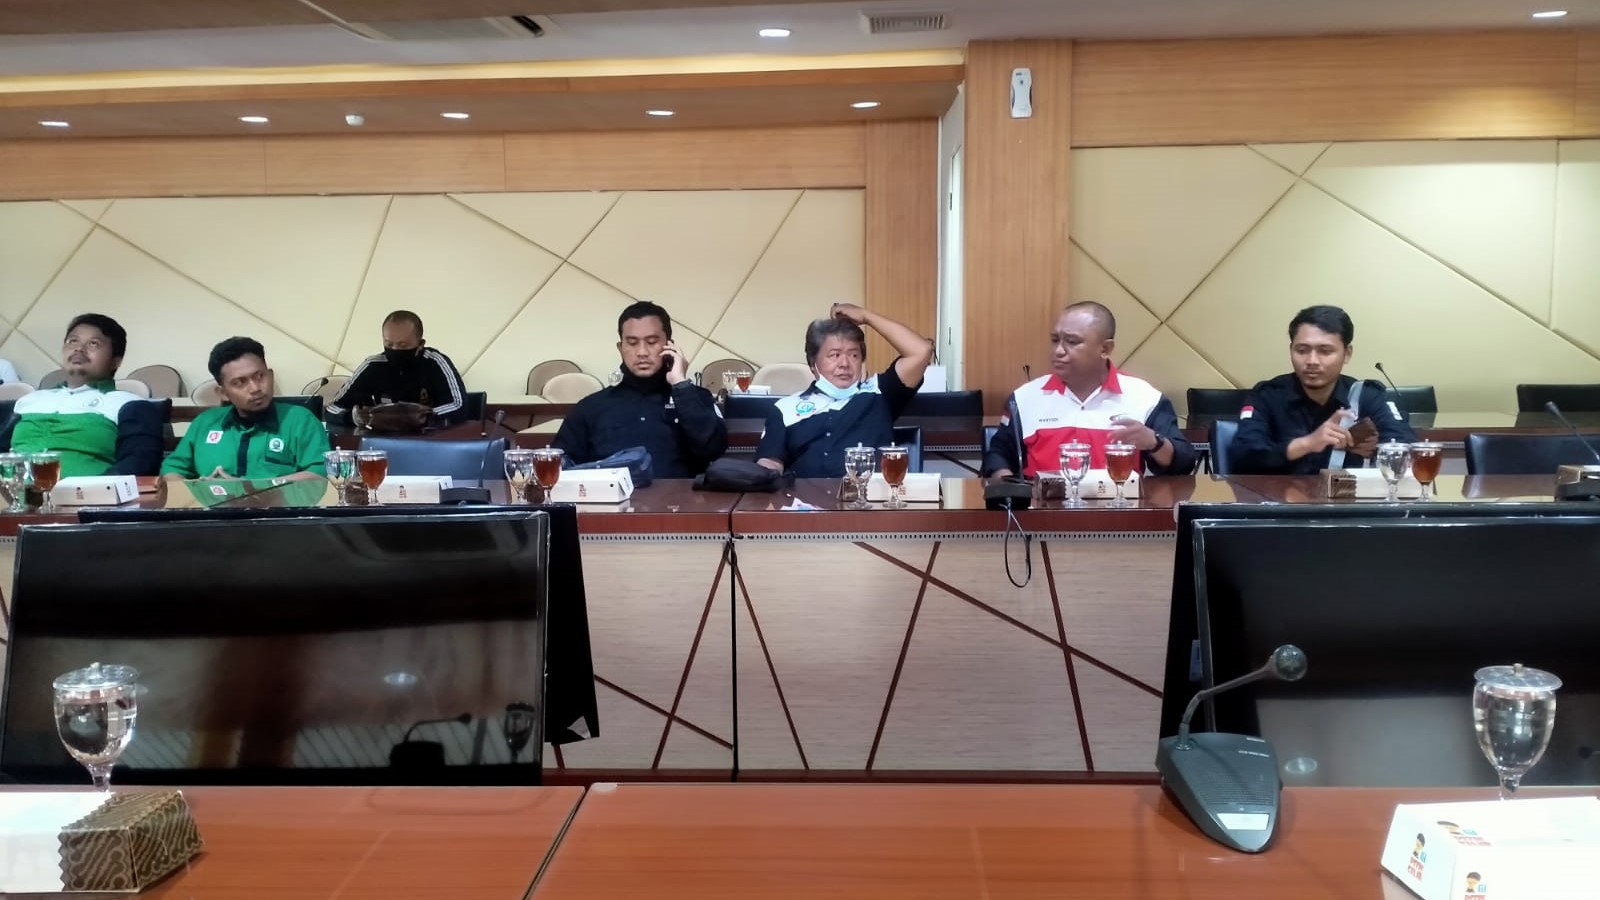  Peringati Hari Kerja Layak, Buruh KSBSI Audiensi ke DPRD Provinsi Jawa Tengah, Ini Tuntutannya